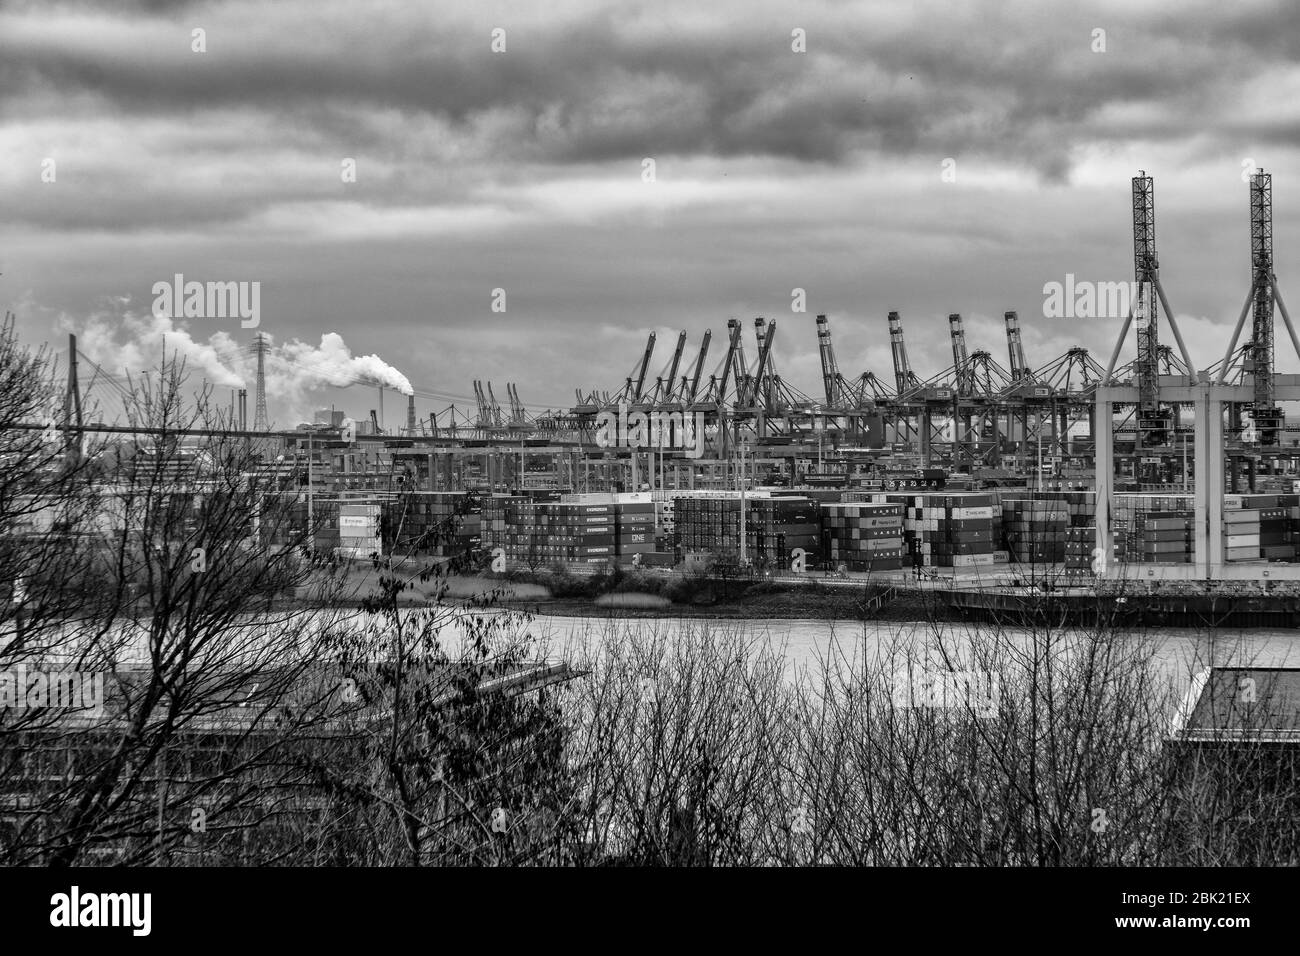 Atemberaubende Panoramasicht auf den Hamburger Hafen mit Containerterminal und der Köhlbrandbrücke an der Elbe mit dramatischem Himmel/Wolken, deutsch Stockfoto